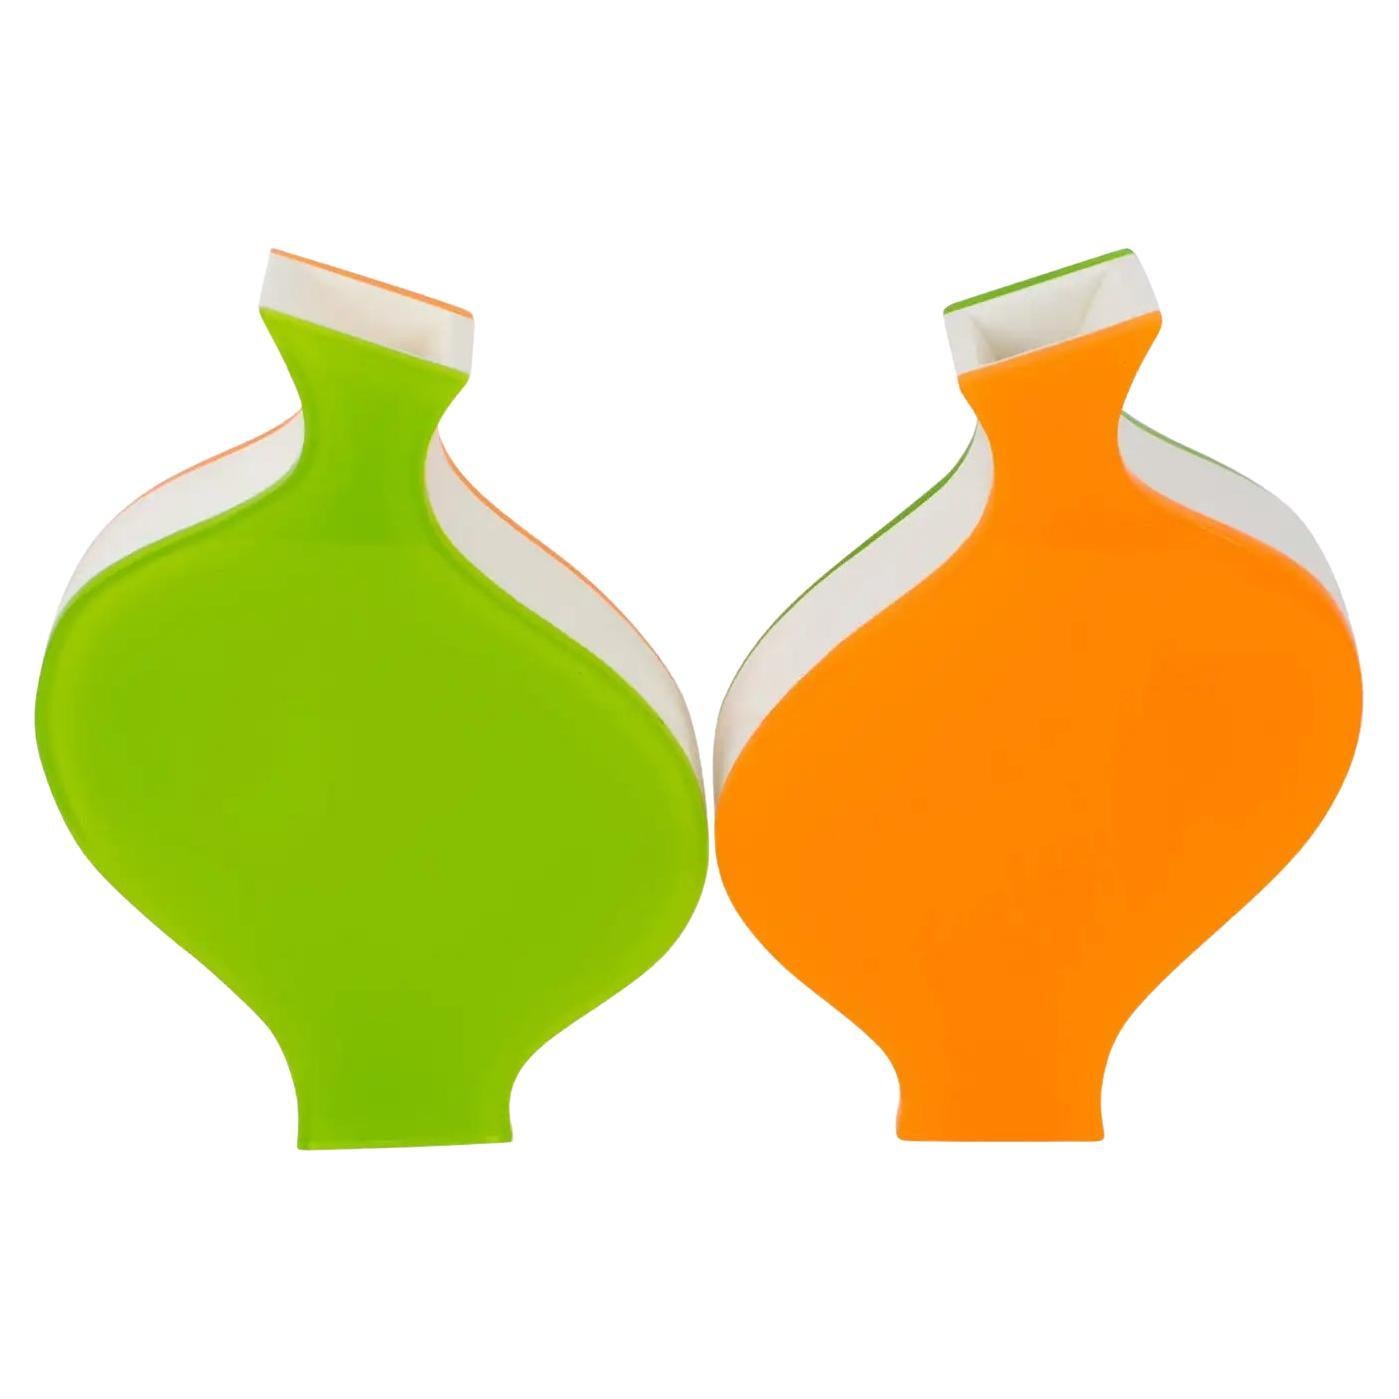 Villeroy & Boch Vasen aus orangefarbenem und grünem Lucite, 1990er-Jahre